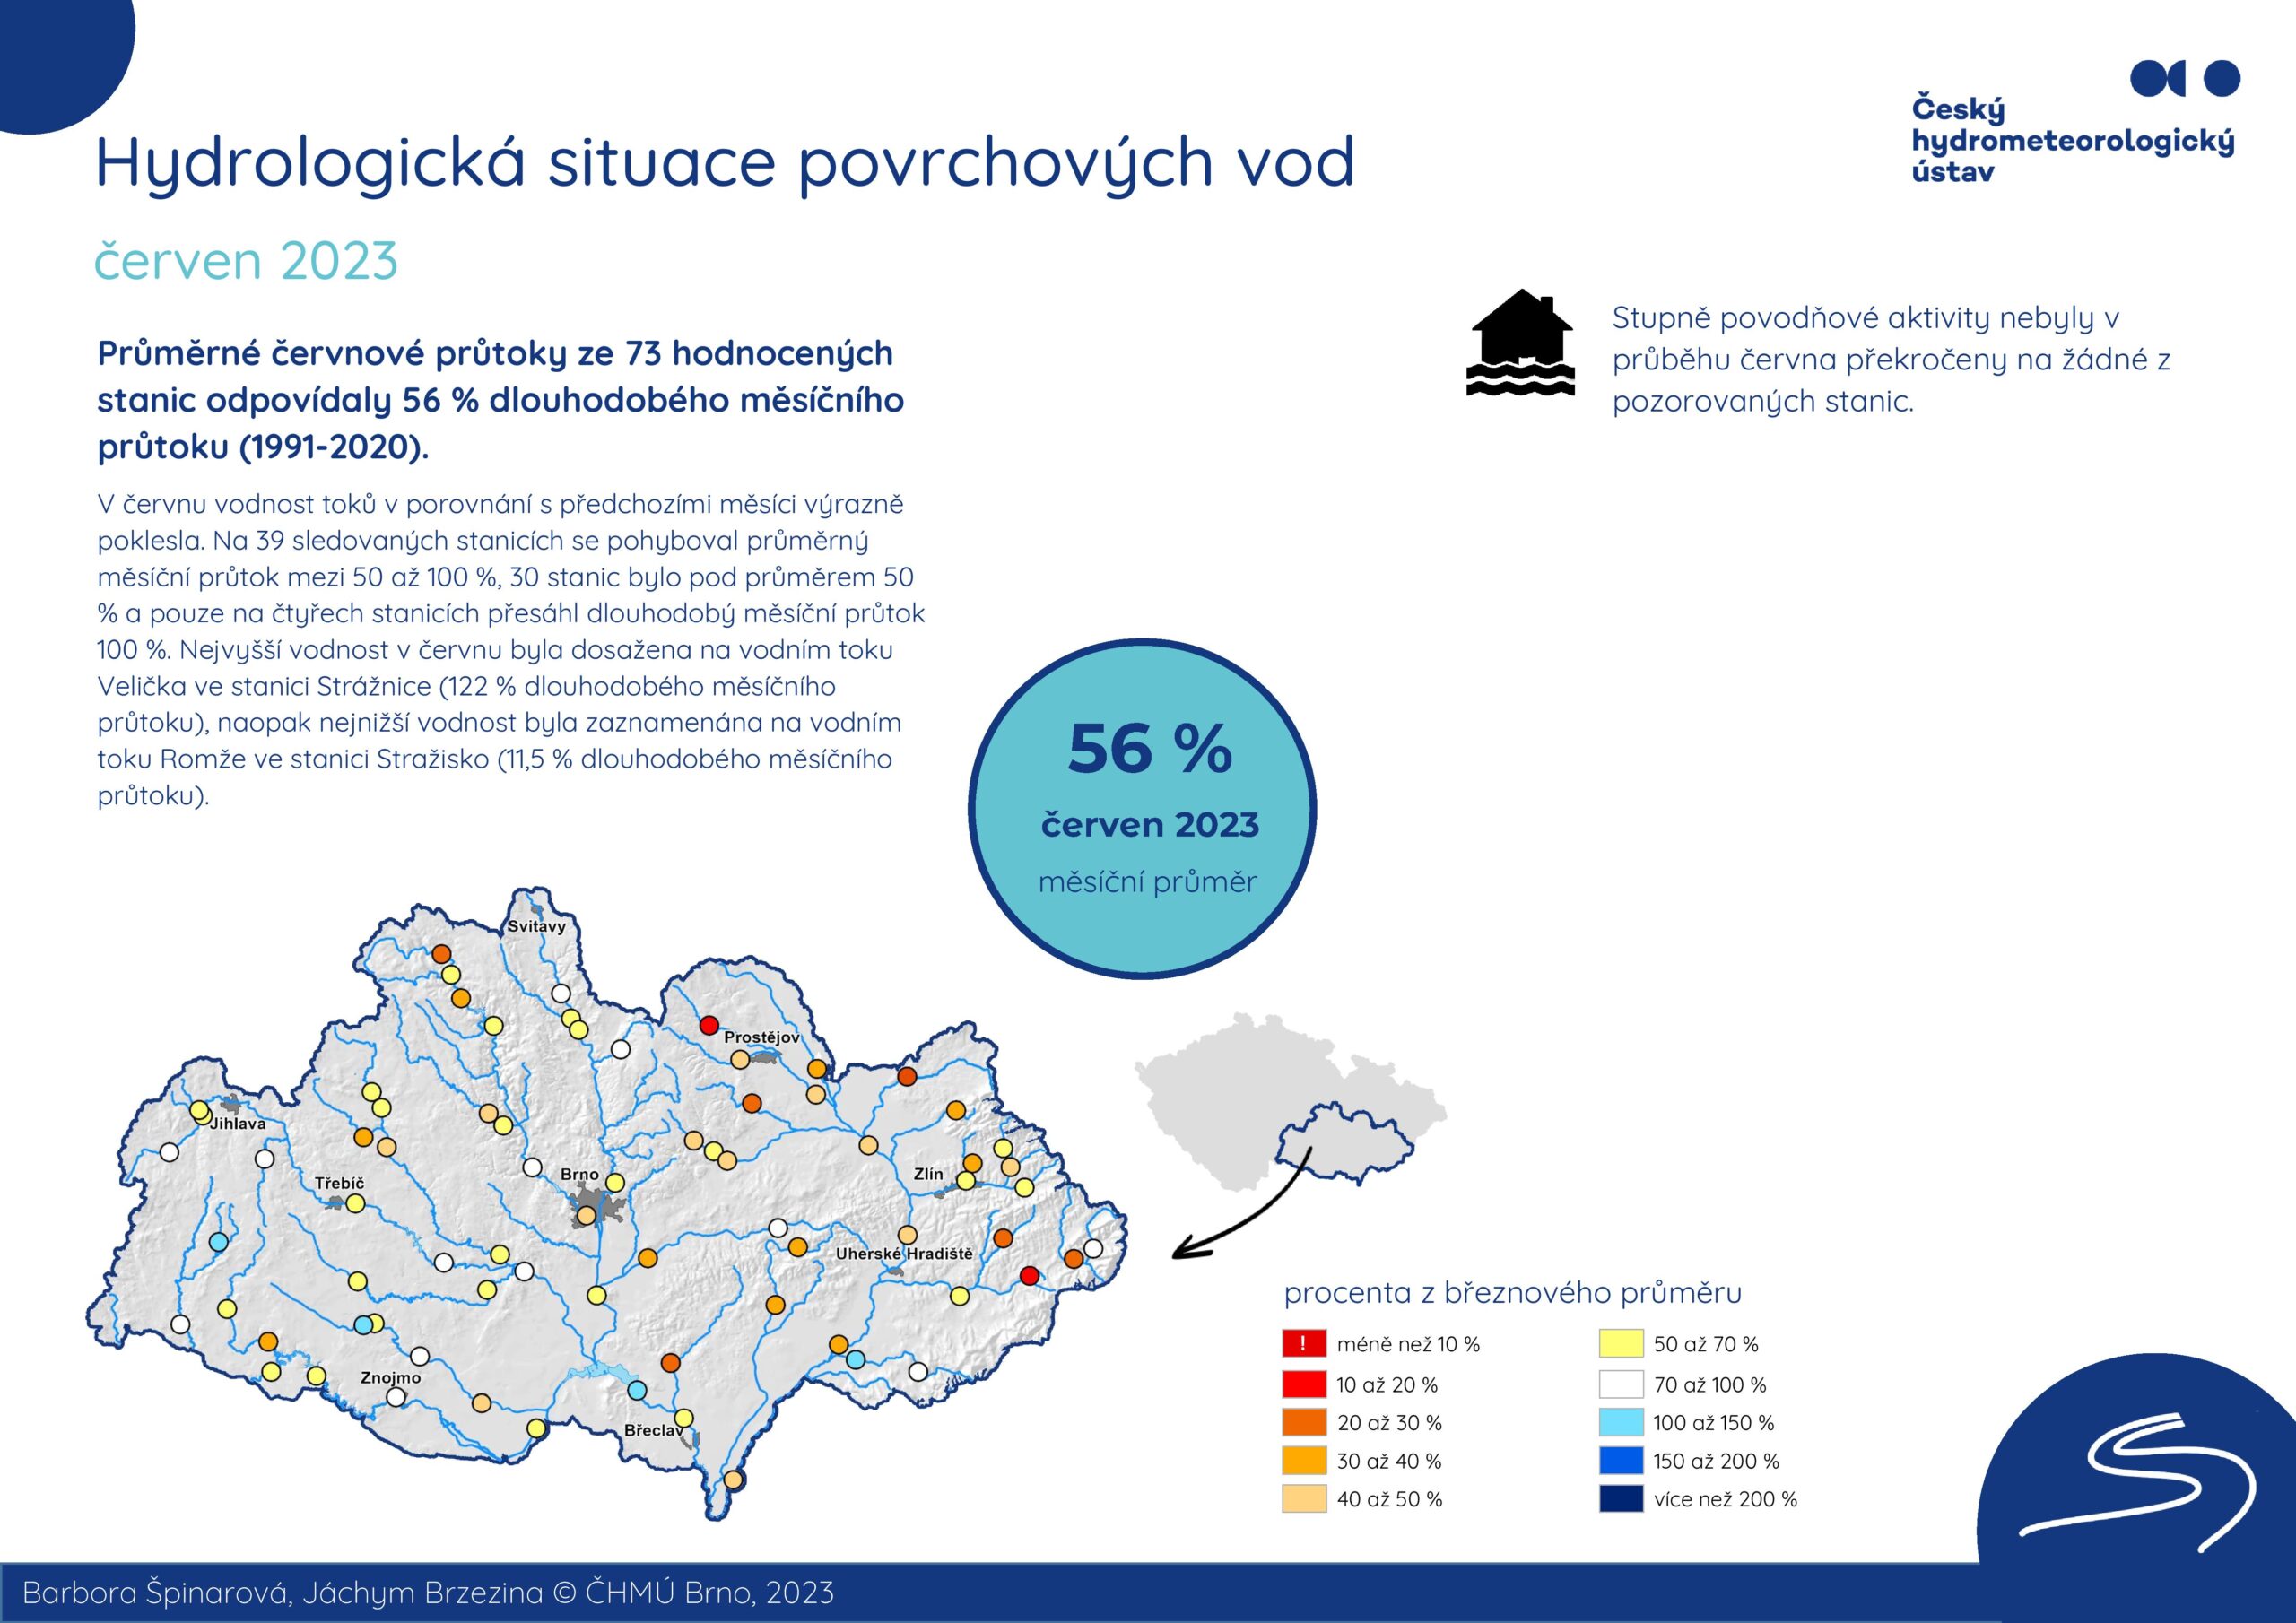 Hydrologická situace povrchových vod na pobočce Brno – červen 20231 min čtení